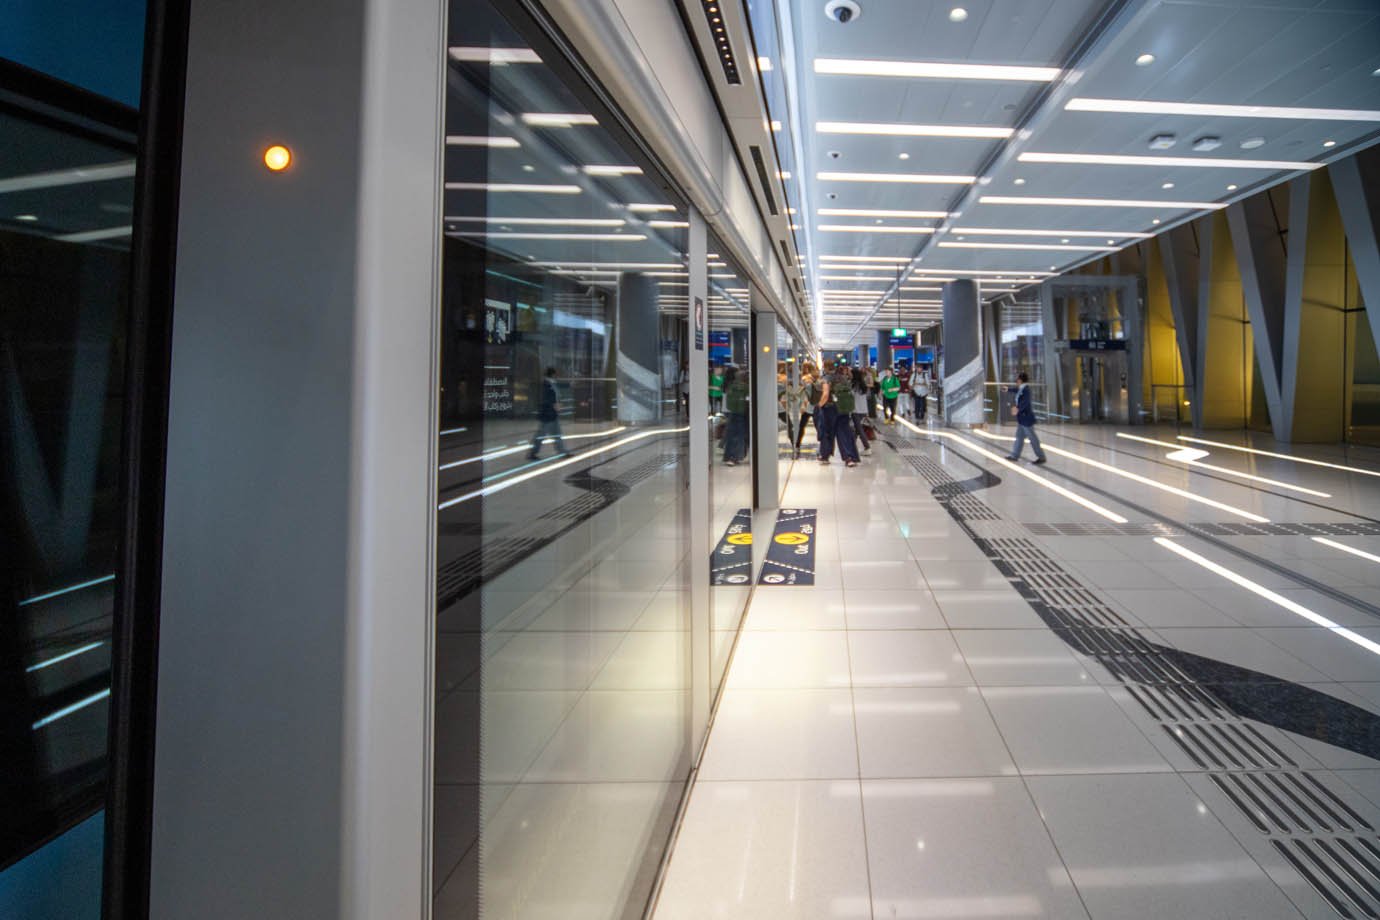 Estação de Metrô em Dubai

Foto: Leandro Fonseca
Data: dezembro 2023